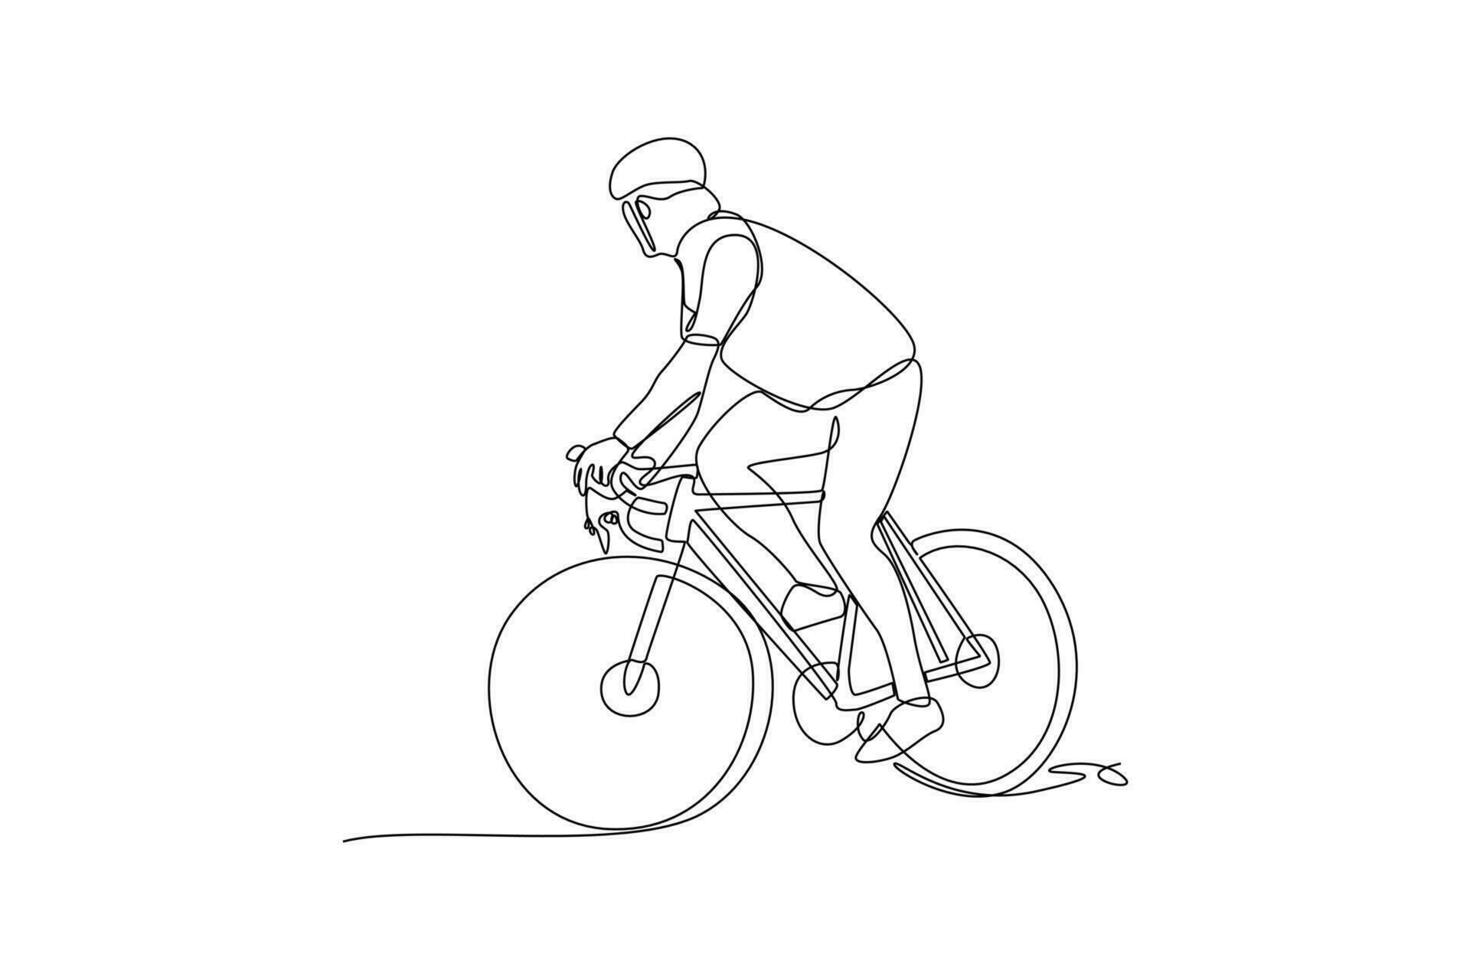 Single einer Linie Zeichnung Welt Fahrrad Tag auf Juni 3. Welt Fahrrad Tag Konzept. kontinuierlich Linie zeichnen Design Grafik Vektor Illustration.